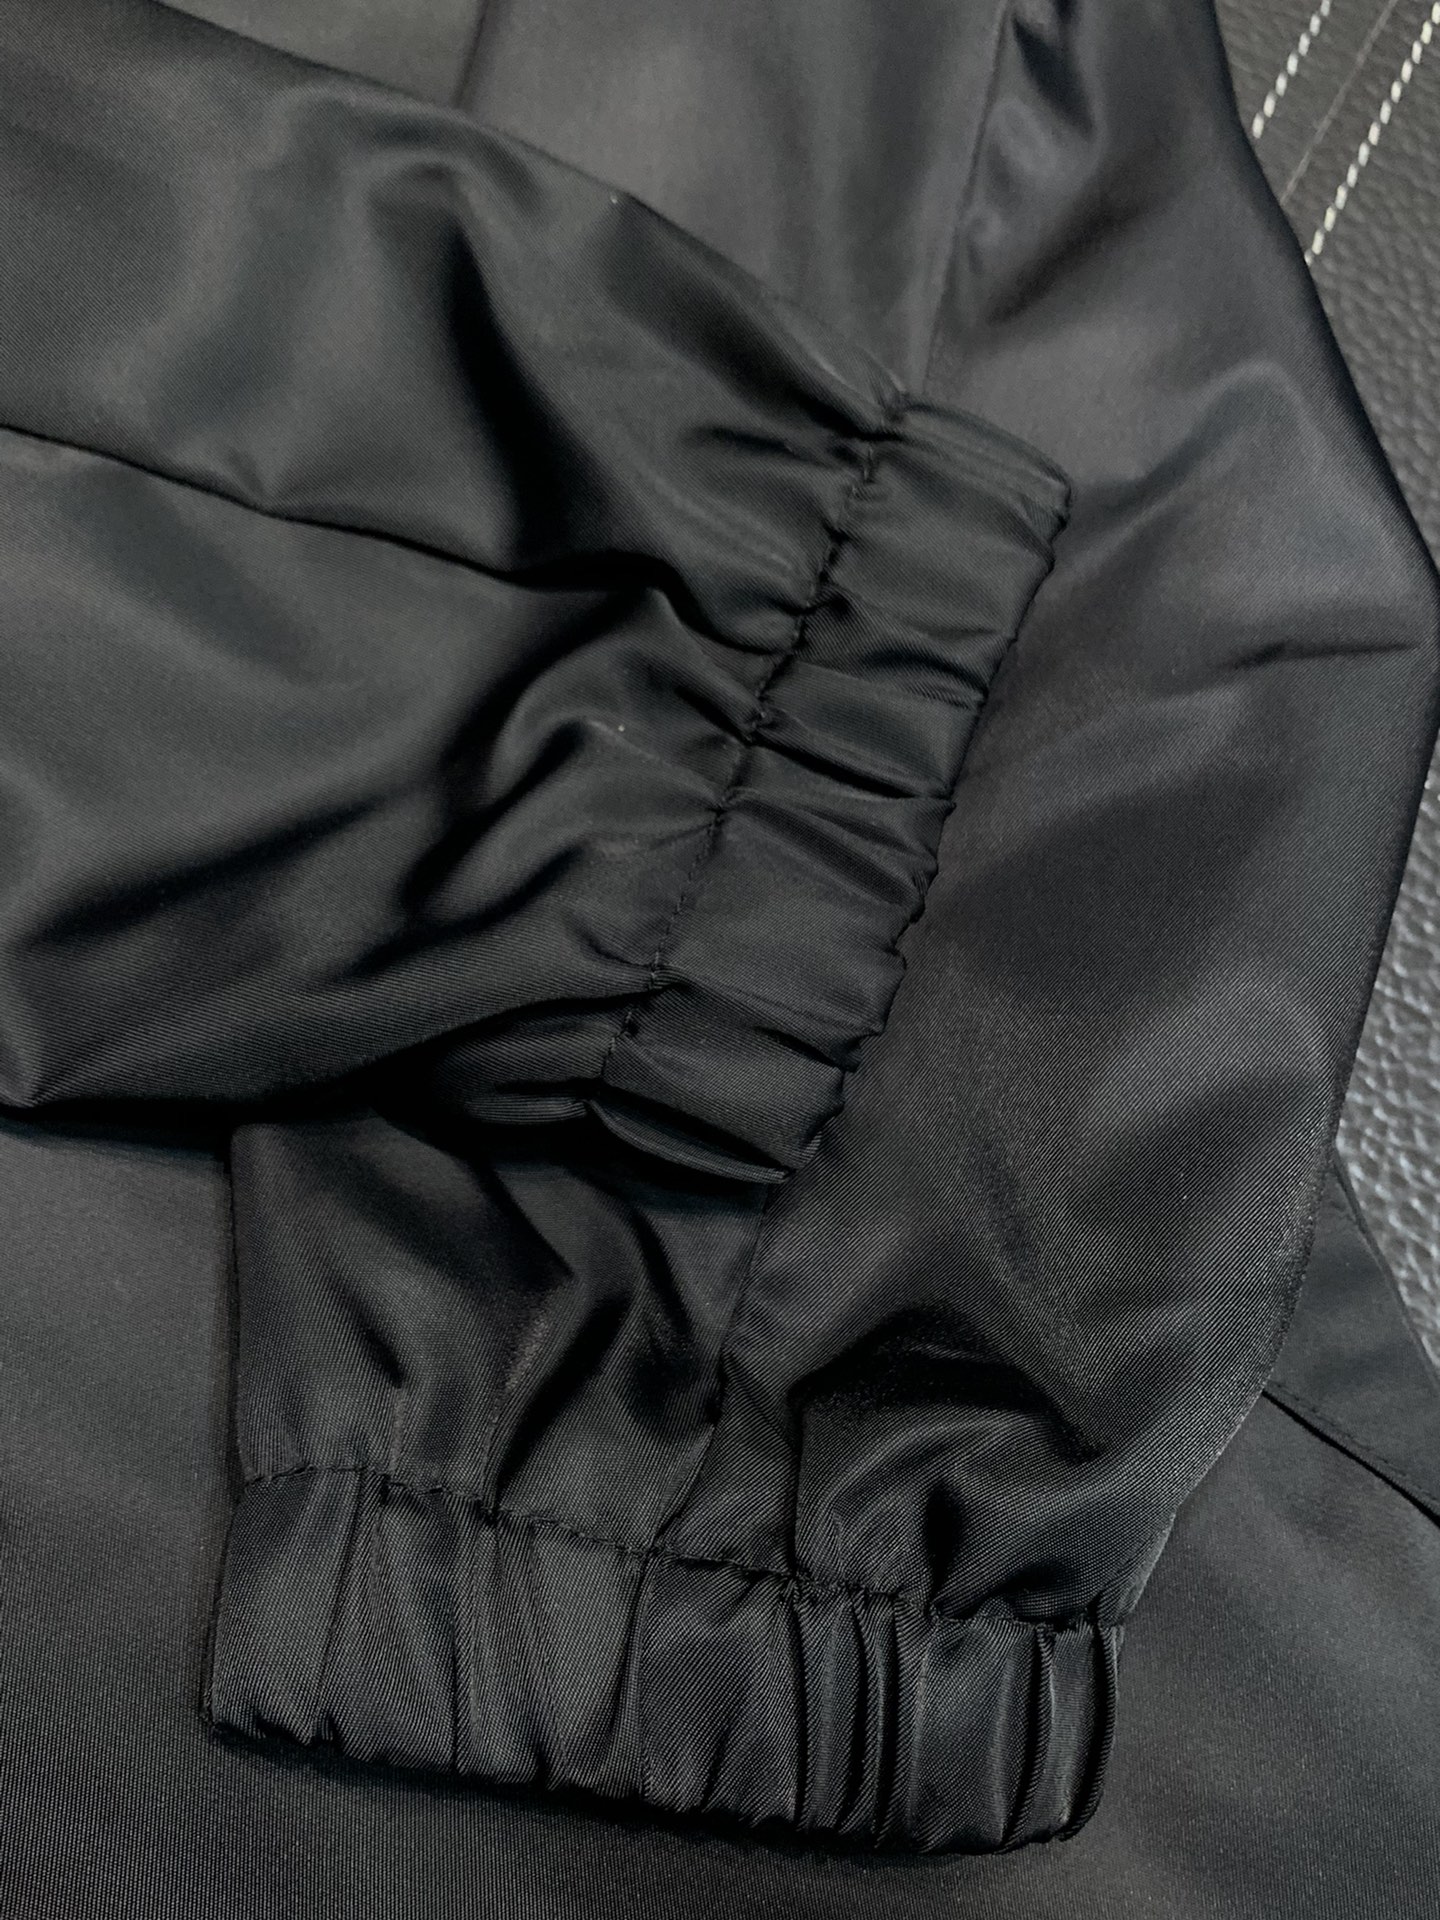 BBR巴宝莉独家专供最新春秋时尚立领夹克经典设计感与颜值爆棚的外套品质更是无法挑剔品控可以直接入手不容过